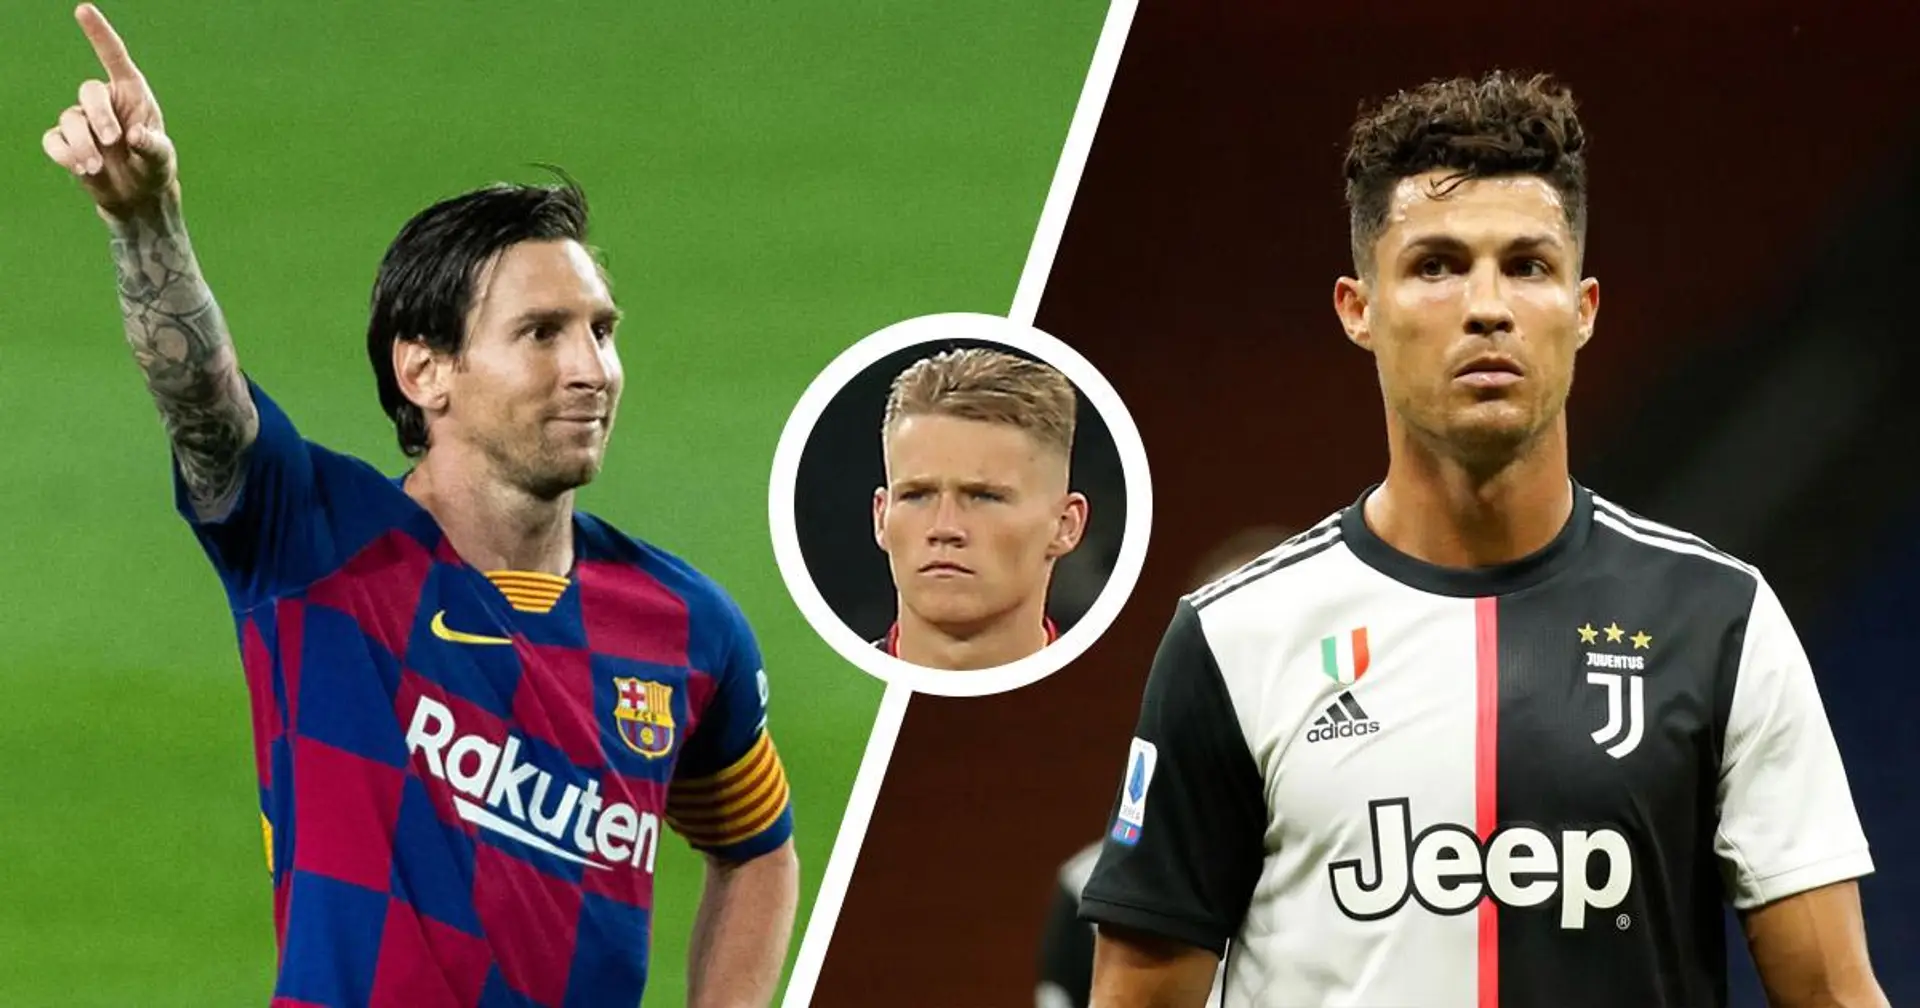 McTominay de Man United: "Messi ou Ronaldo? Messi sans l'ombre d'un doute"